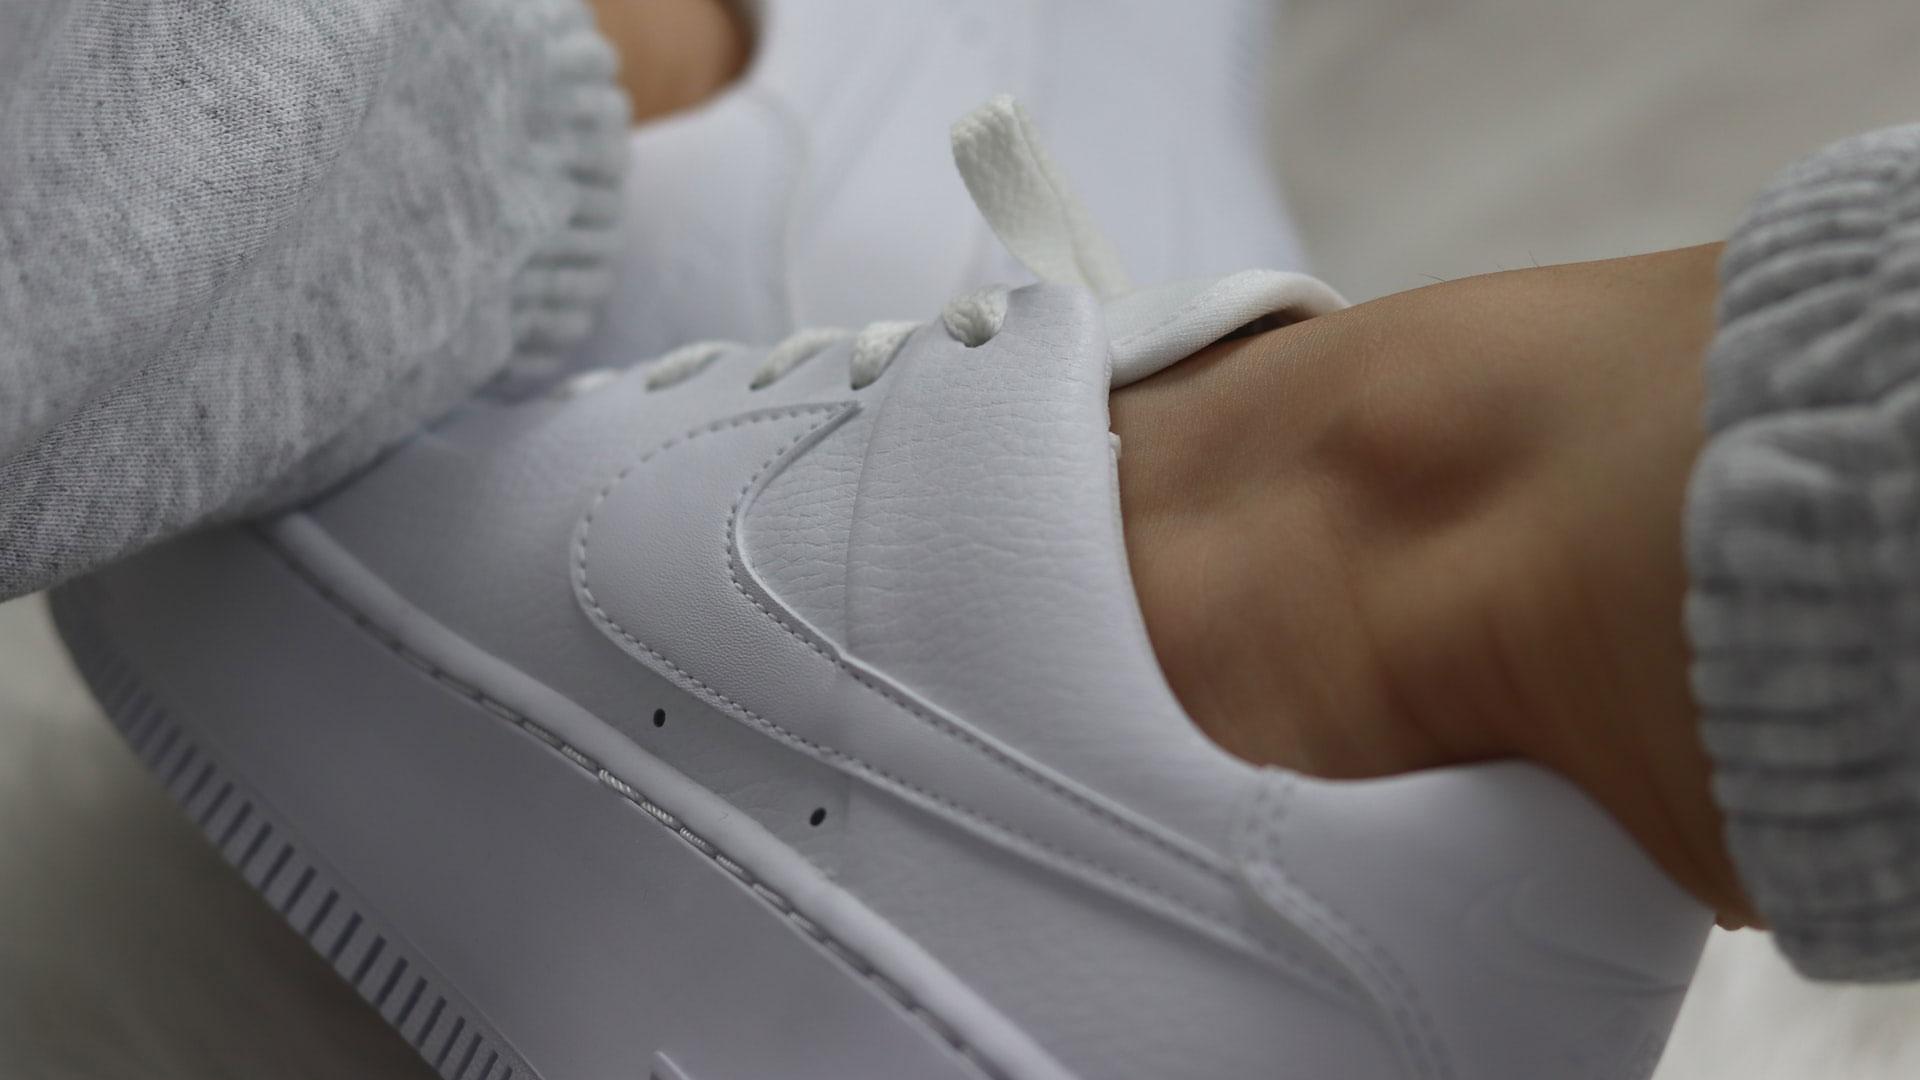 Witte sneakers schoonmaken? Dit zijn de ultieme tips